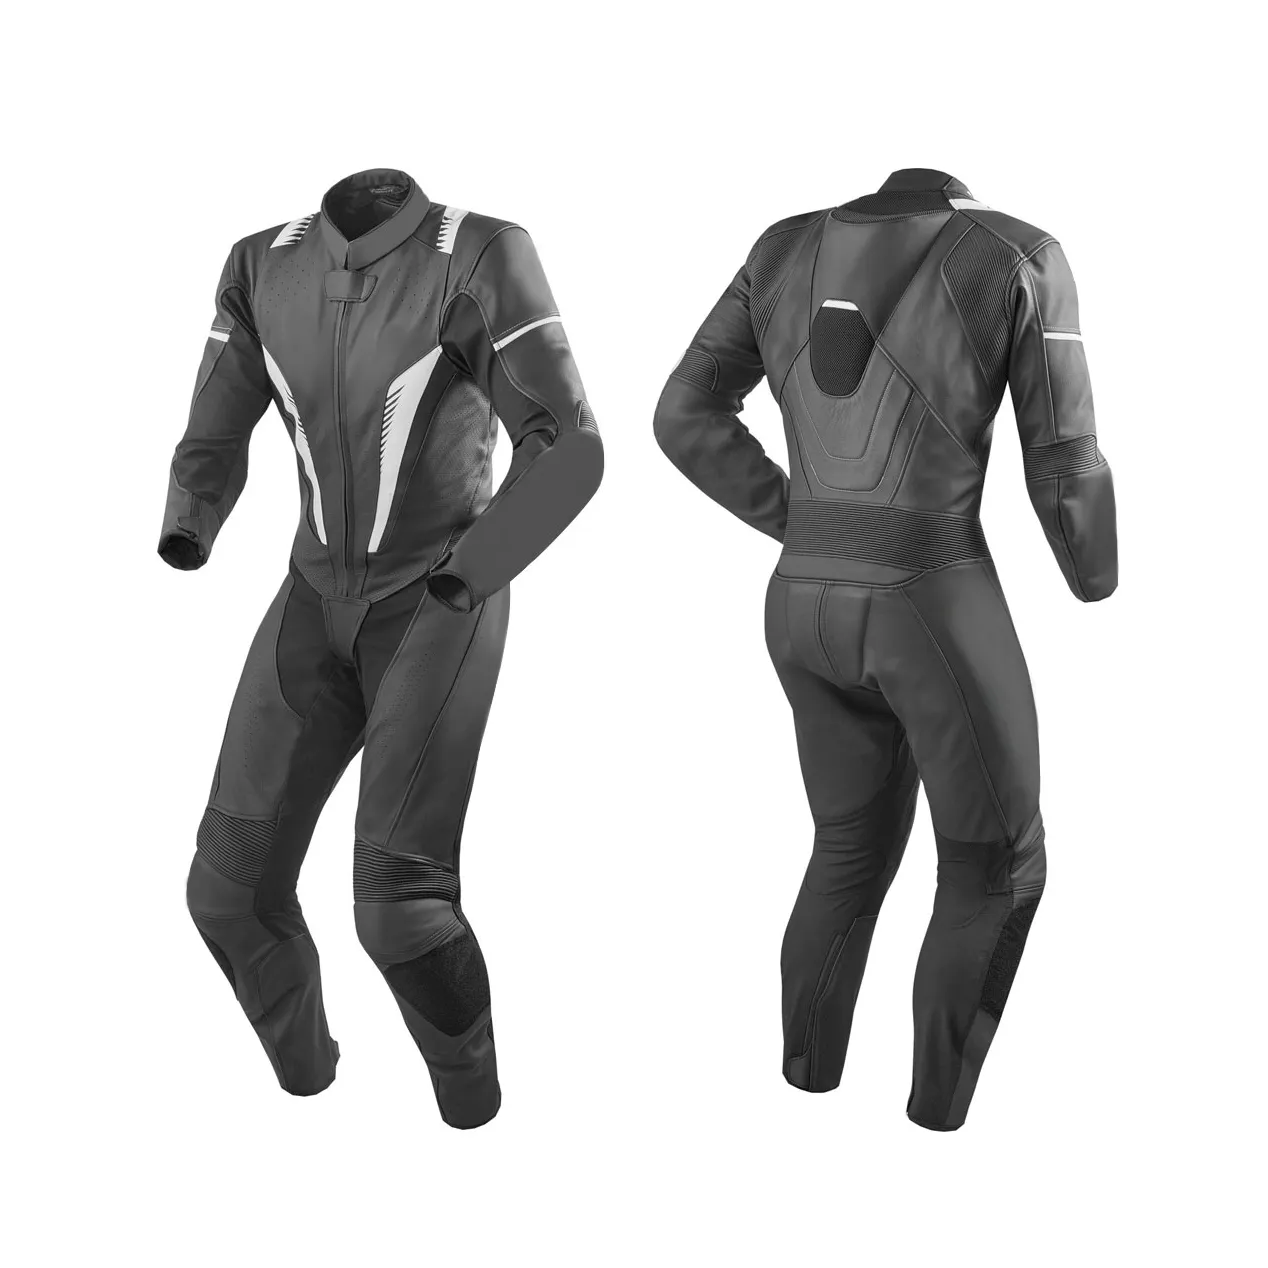 Kostüm hakiki deri motosiklet takım elbise yüksek kalite koruma motosiklet oto yarış takım elbise giymek